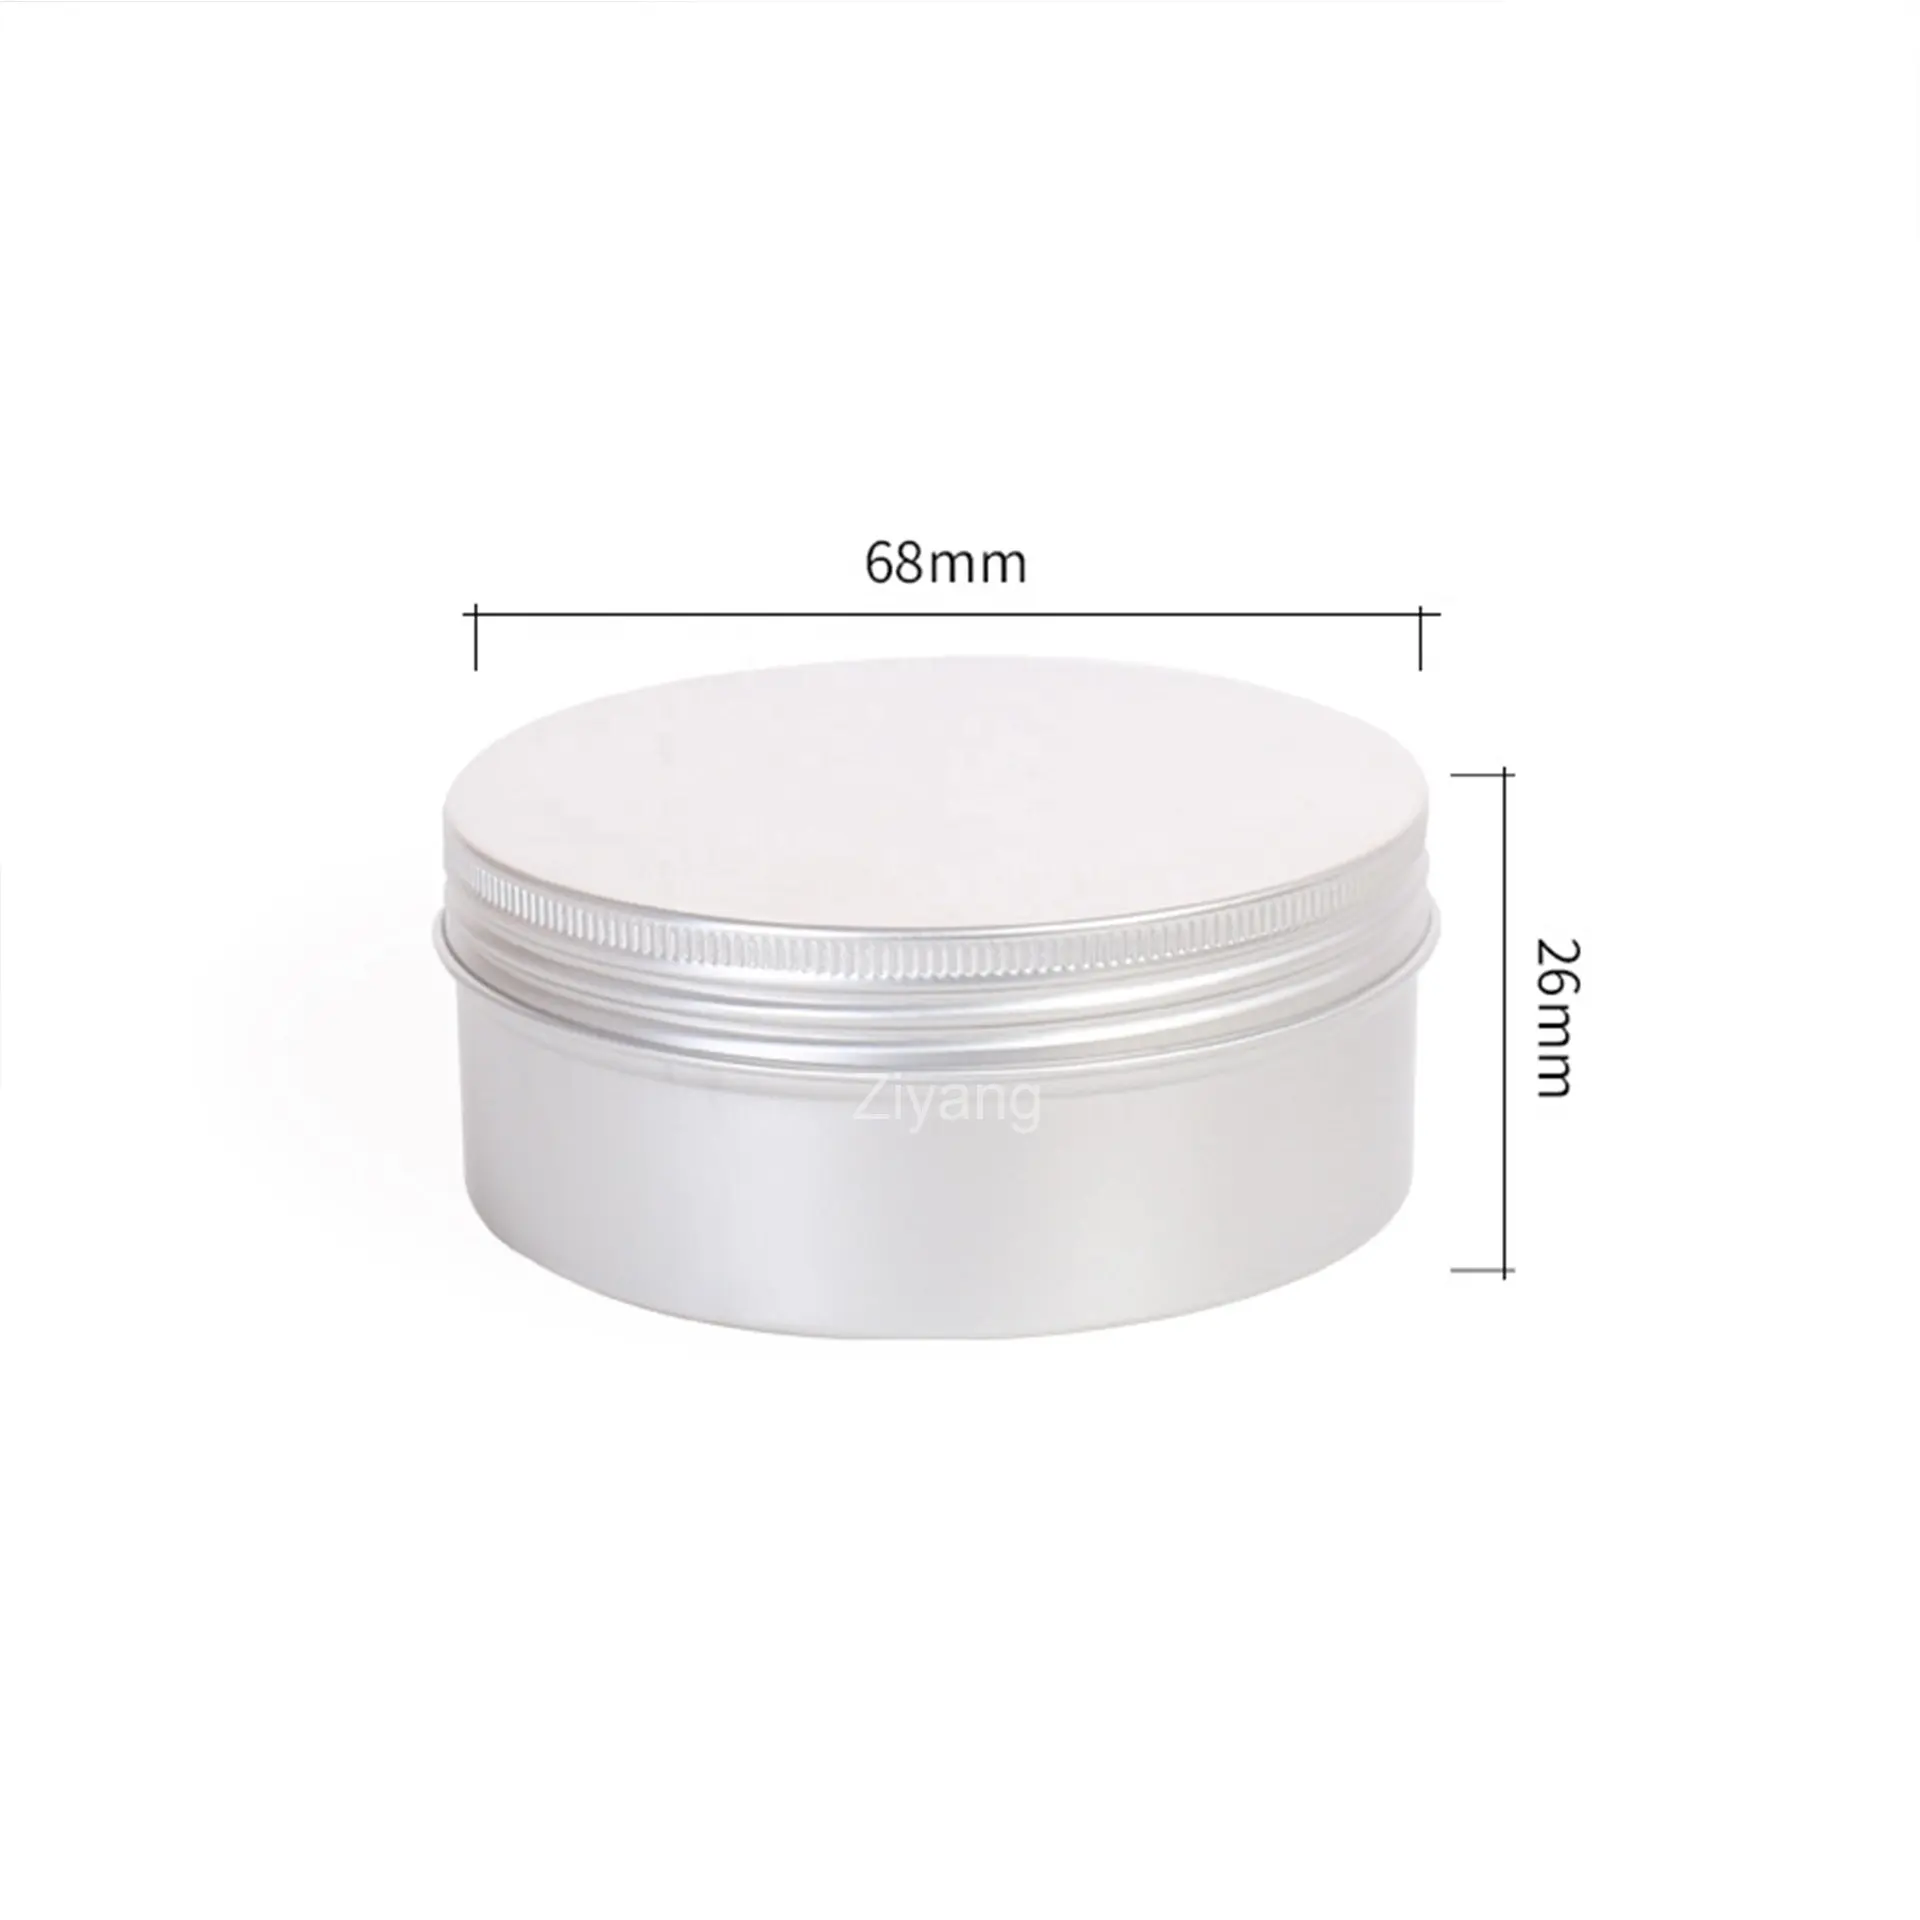 Hochwertige silberne runde Metall-Dose mit Deckel Aluminiumdosen kosmetischer Metall-Dose Behälter individuell